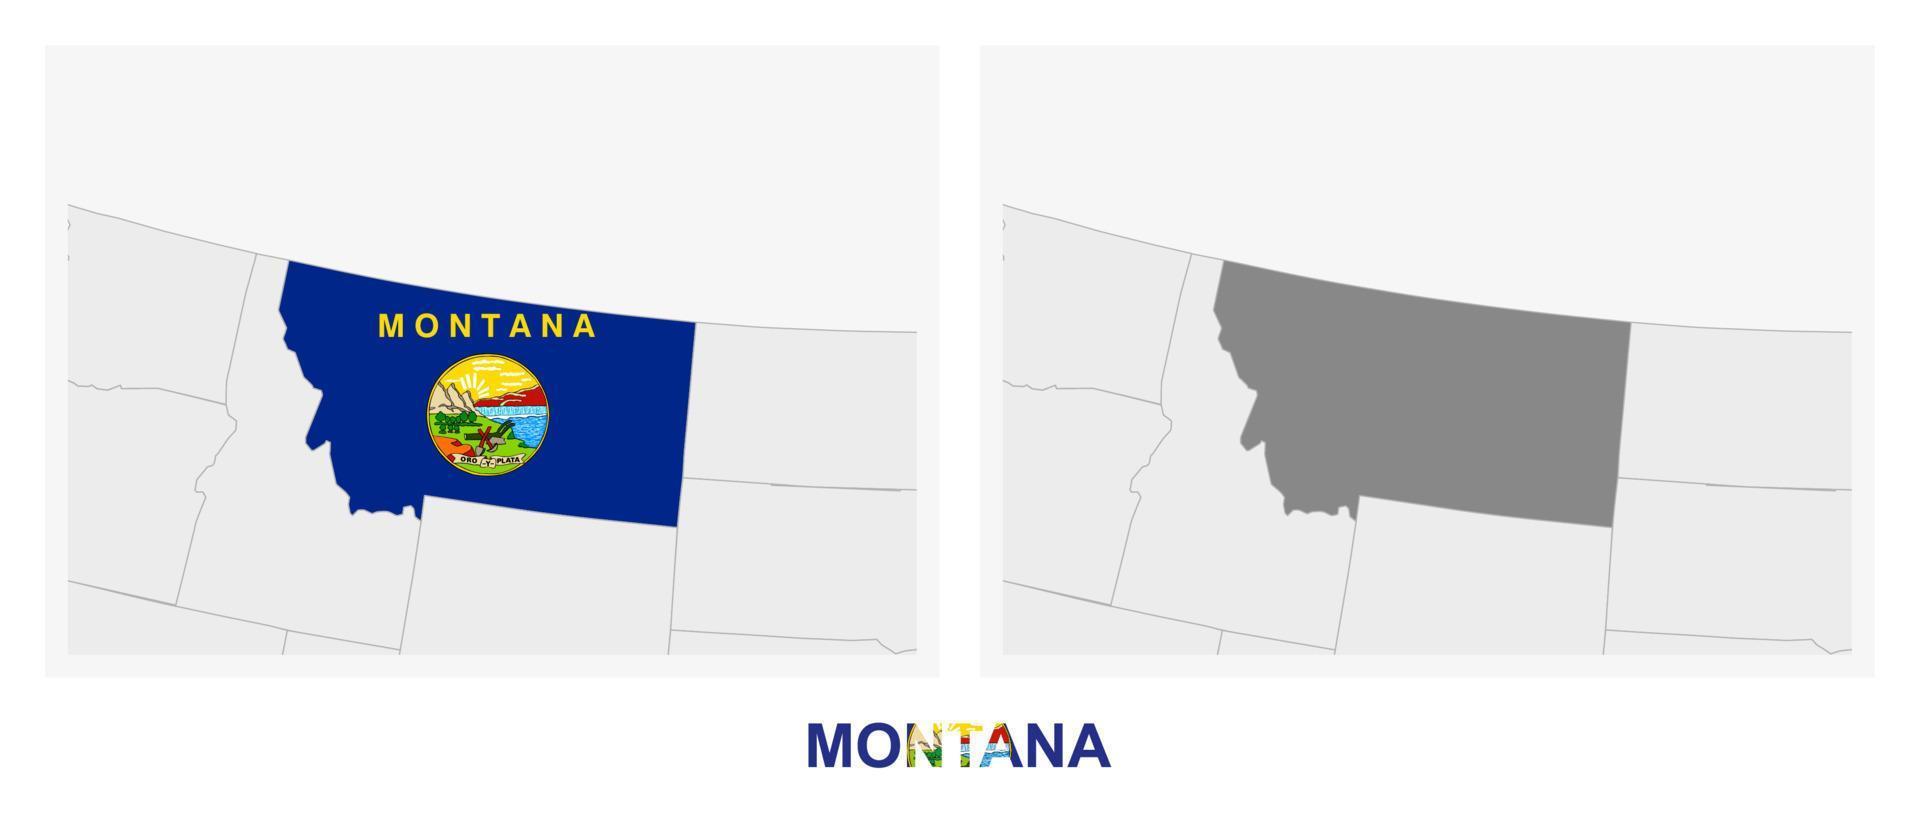 dos versiones del mapa del estado de montana, con la bandera de montana y resaltada en gris oscuro. vector